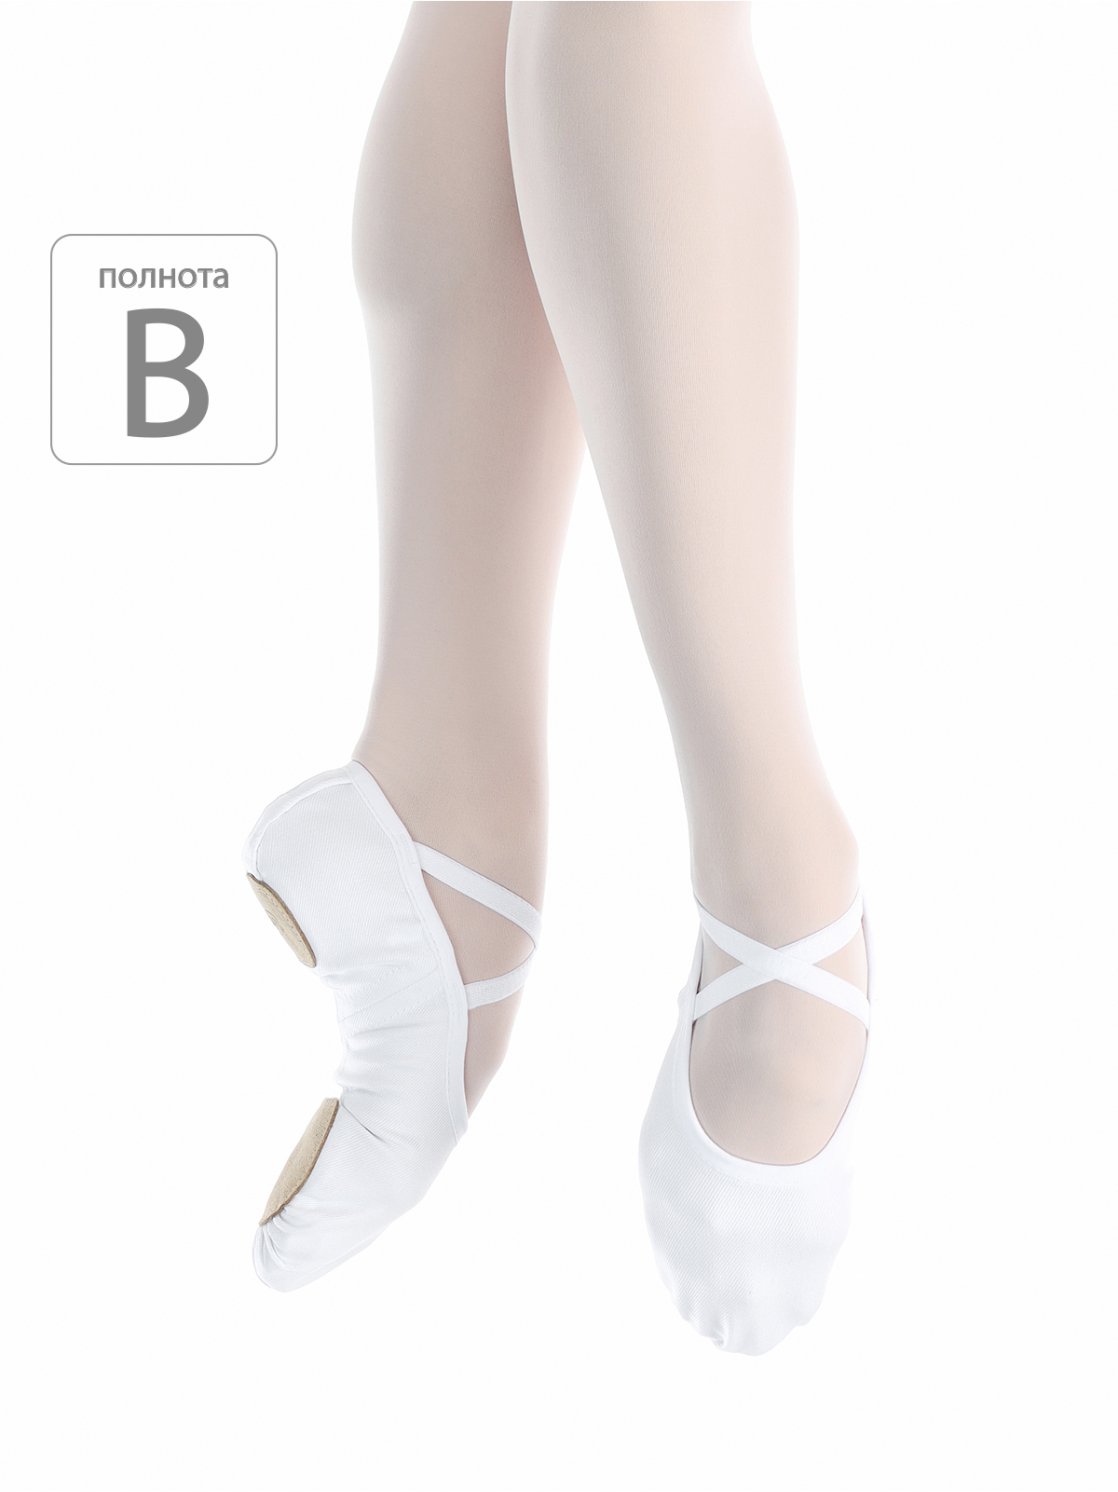 Soft ballet shoes